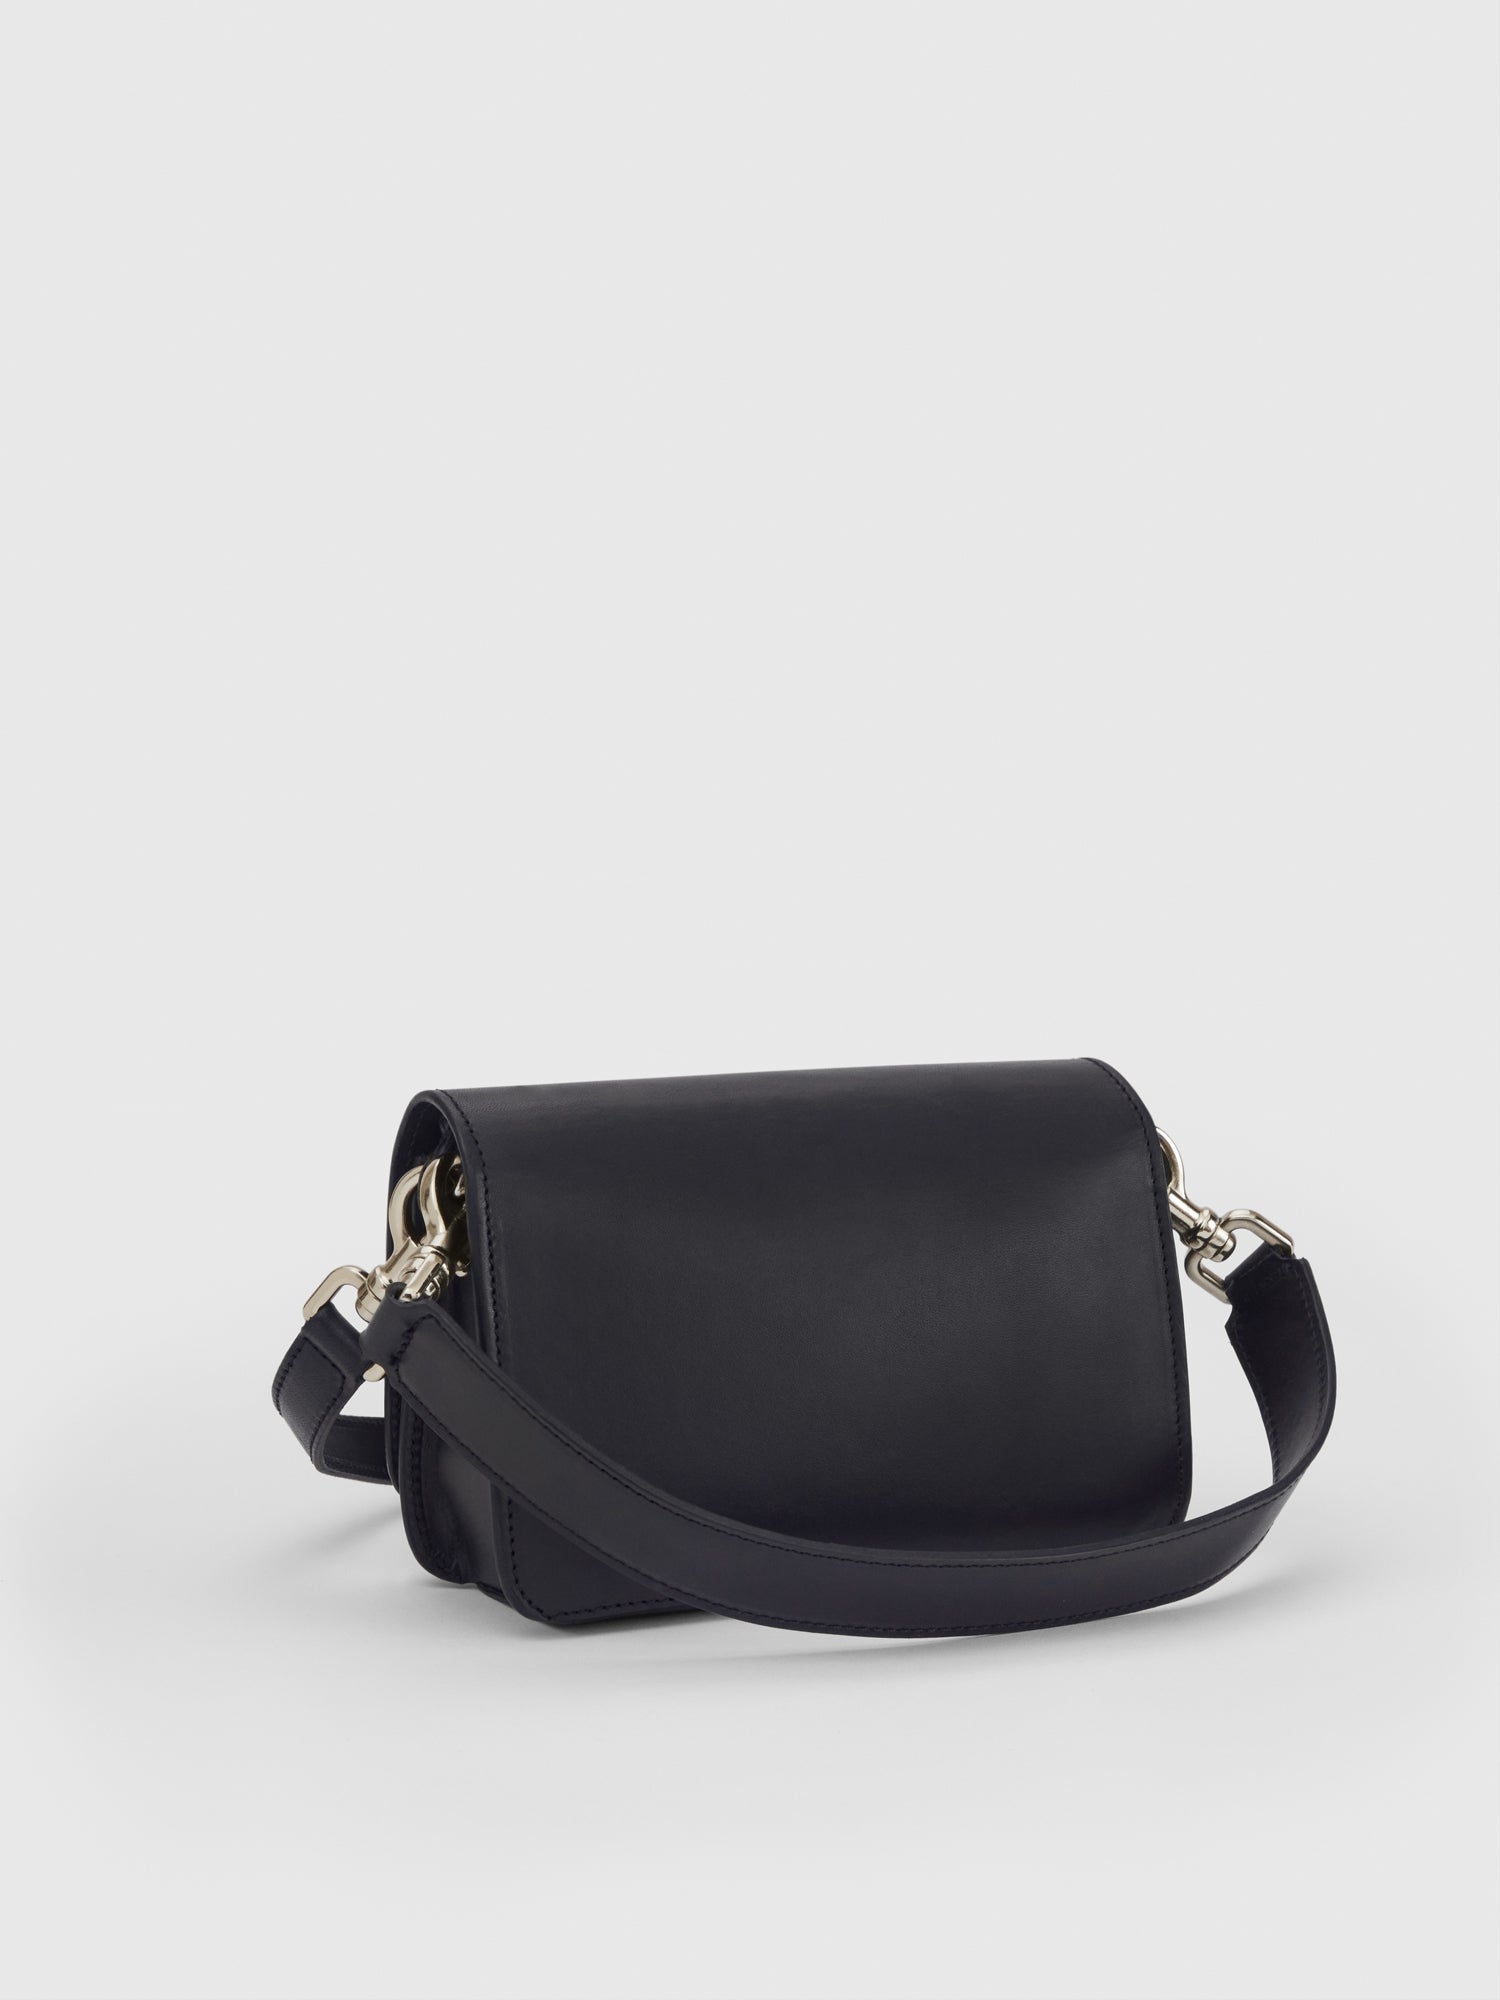 Corsina Black/Silver Leather Shoulder bag